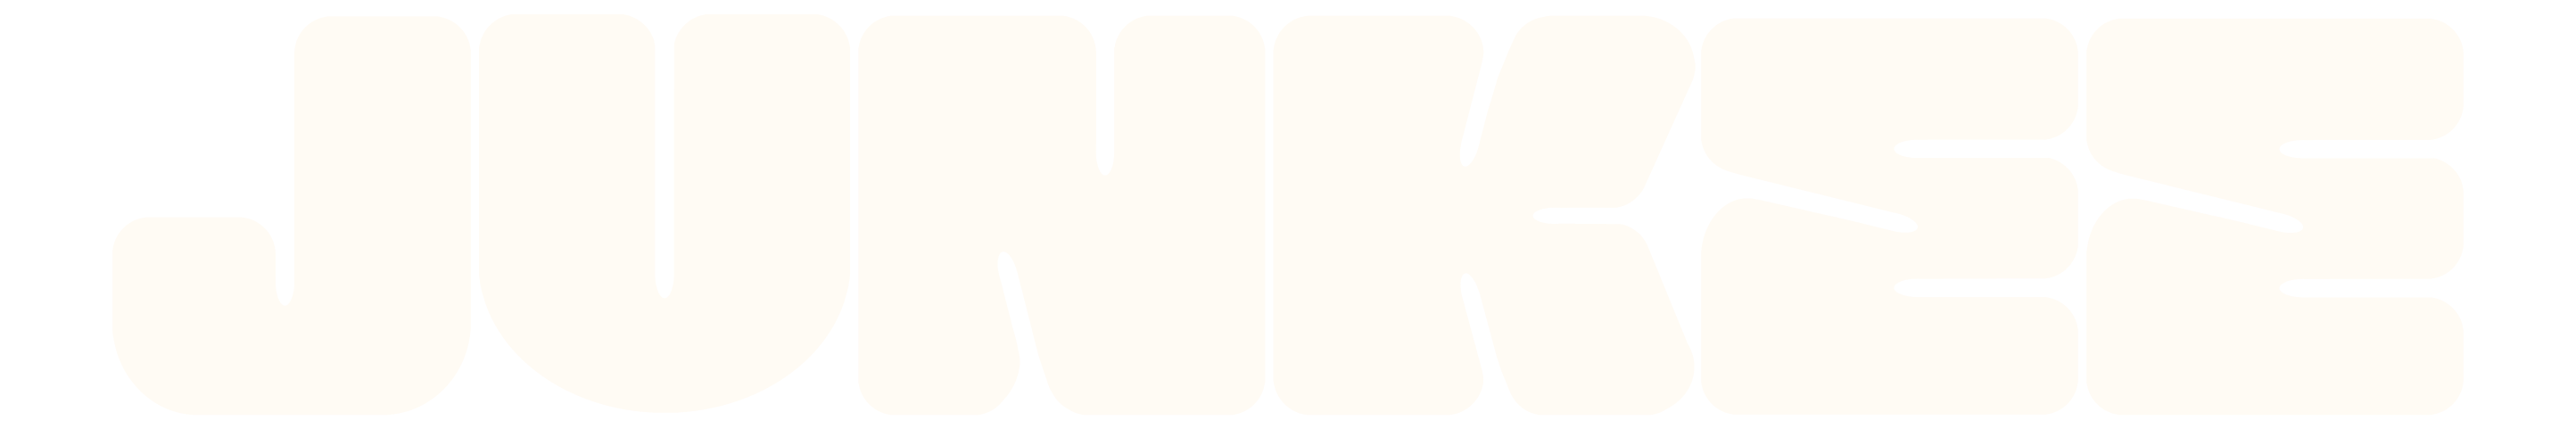 logo cream